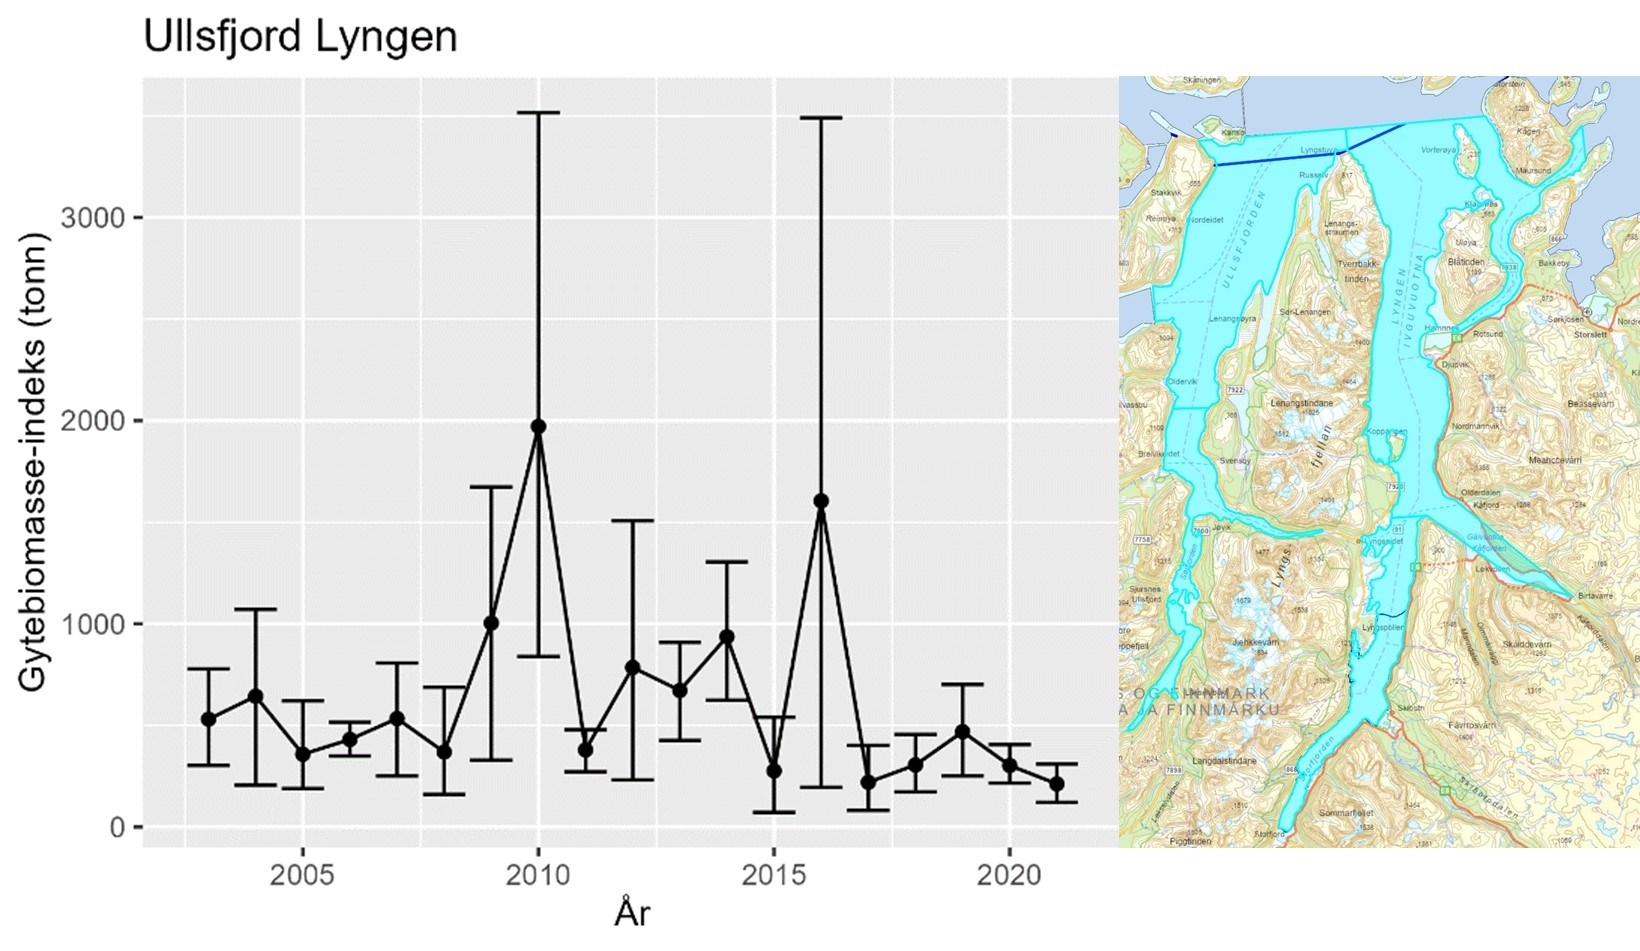 Figur 29 : Bunntrålindeks for gytebiomasse av kysttorsk i stratum Ullsfjord Lyngen fra Havforskningsinstituttets årlige Kysttokt (august-september). Data på modning mangler fra 2022 og indeksen vises derfor bare frem til 2021. Feilstablene viser 5 og 95 %-kvantilene, mens punktestimatene er middelverdi over 500 bootstrap-iterasjoner i estimeringsprosessen. Større usikkerhet er generelt forbundet med større variasjon i torskefangster innenfor stratumet. Kartet til høyre viser området som er inkludert i stratumet.